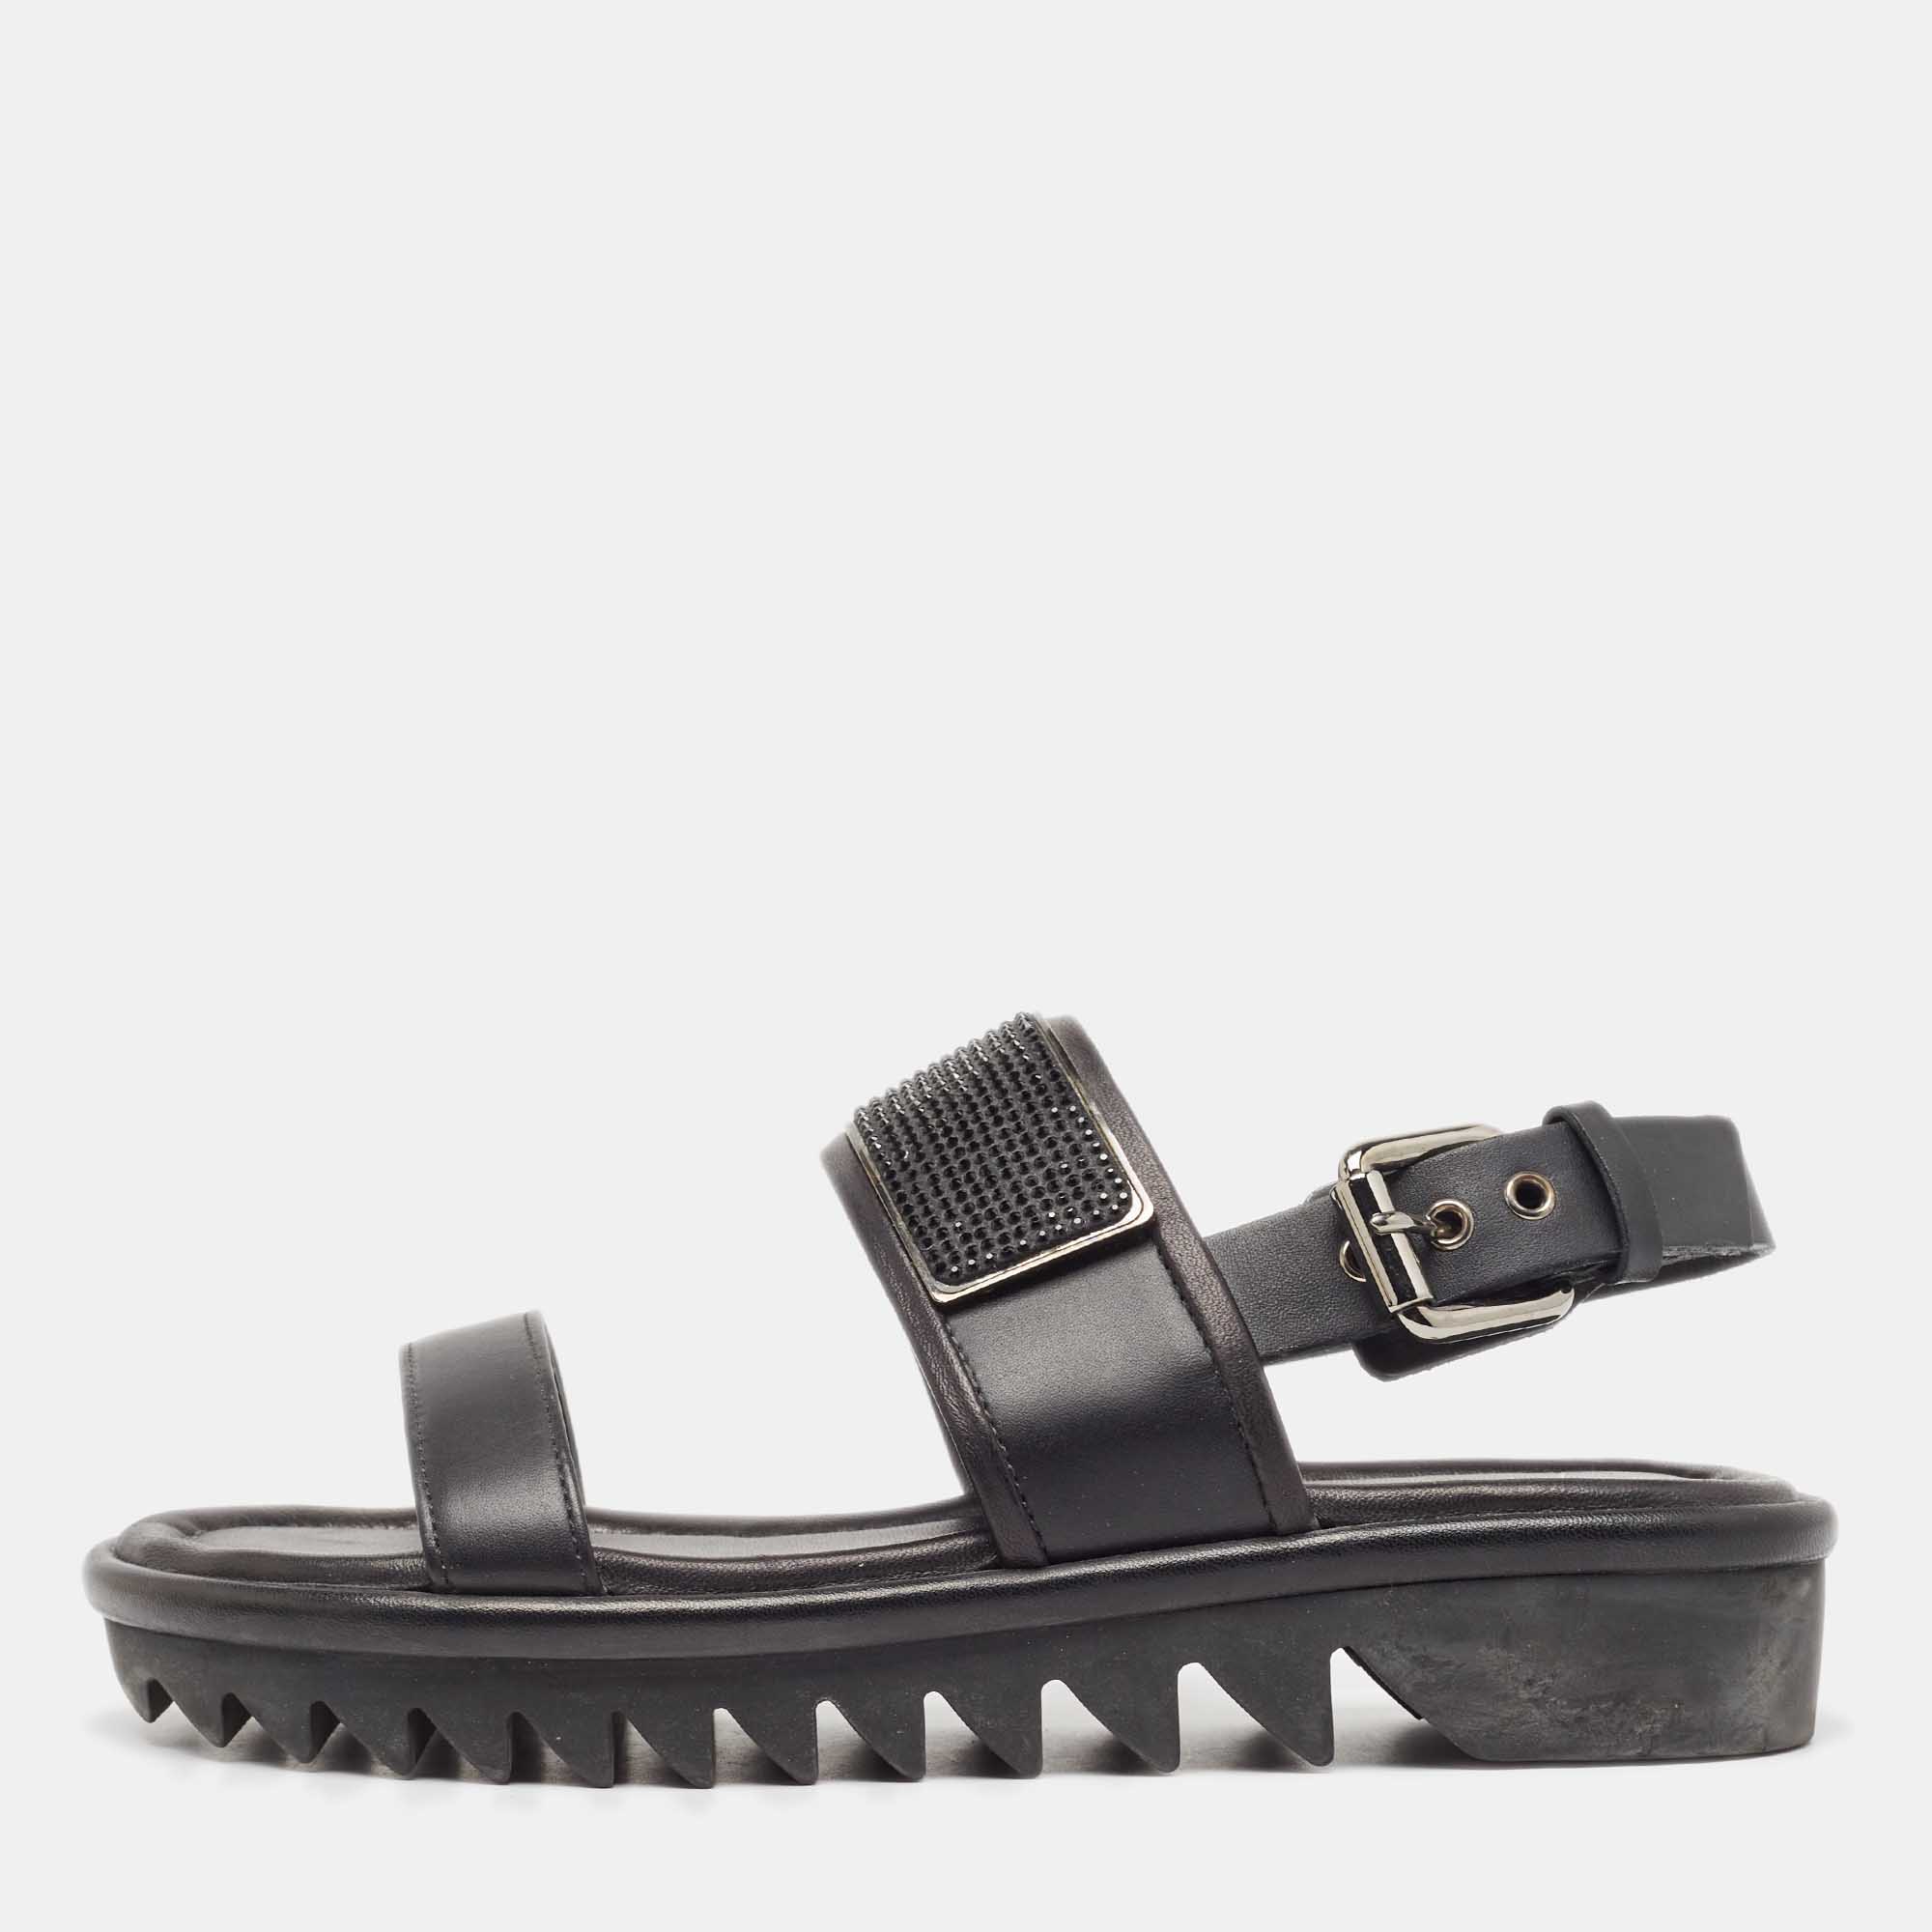 Giuseppe zanotti black leather crystal embellished slingback sandals size 37